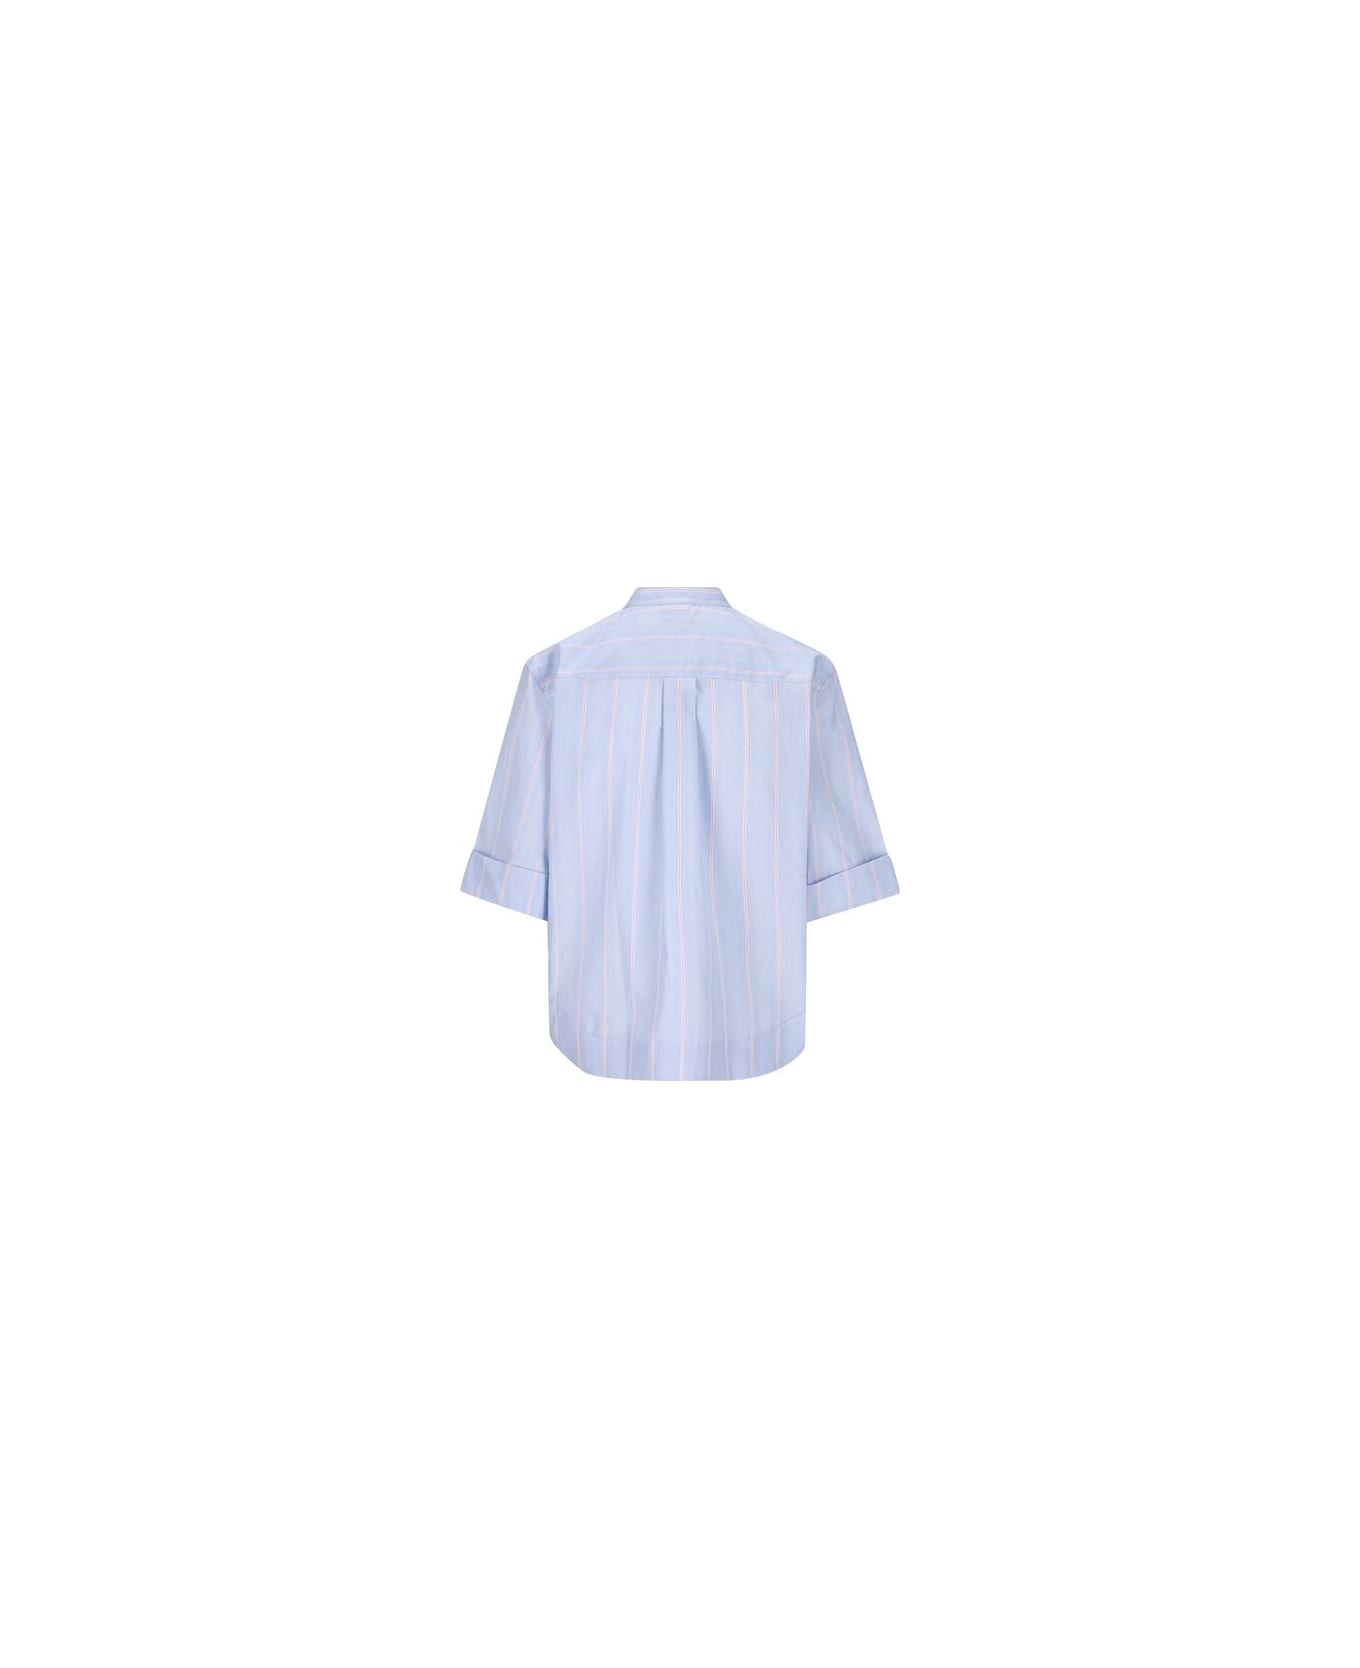 Fay Poepelin Shirt With Mandarin Collar - Azzurro/rosa シャツ